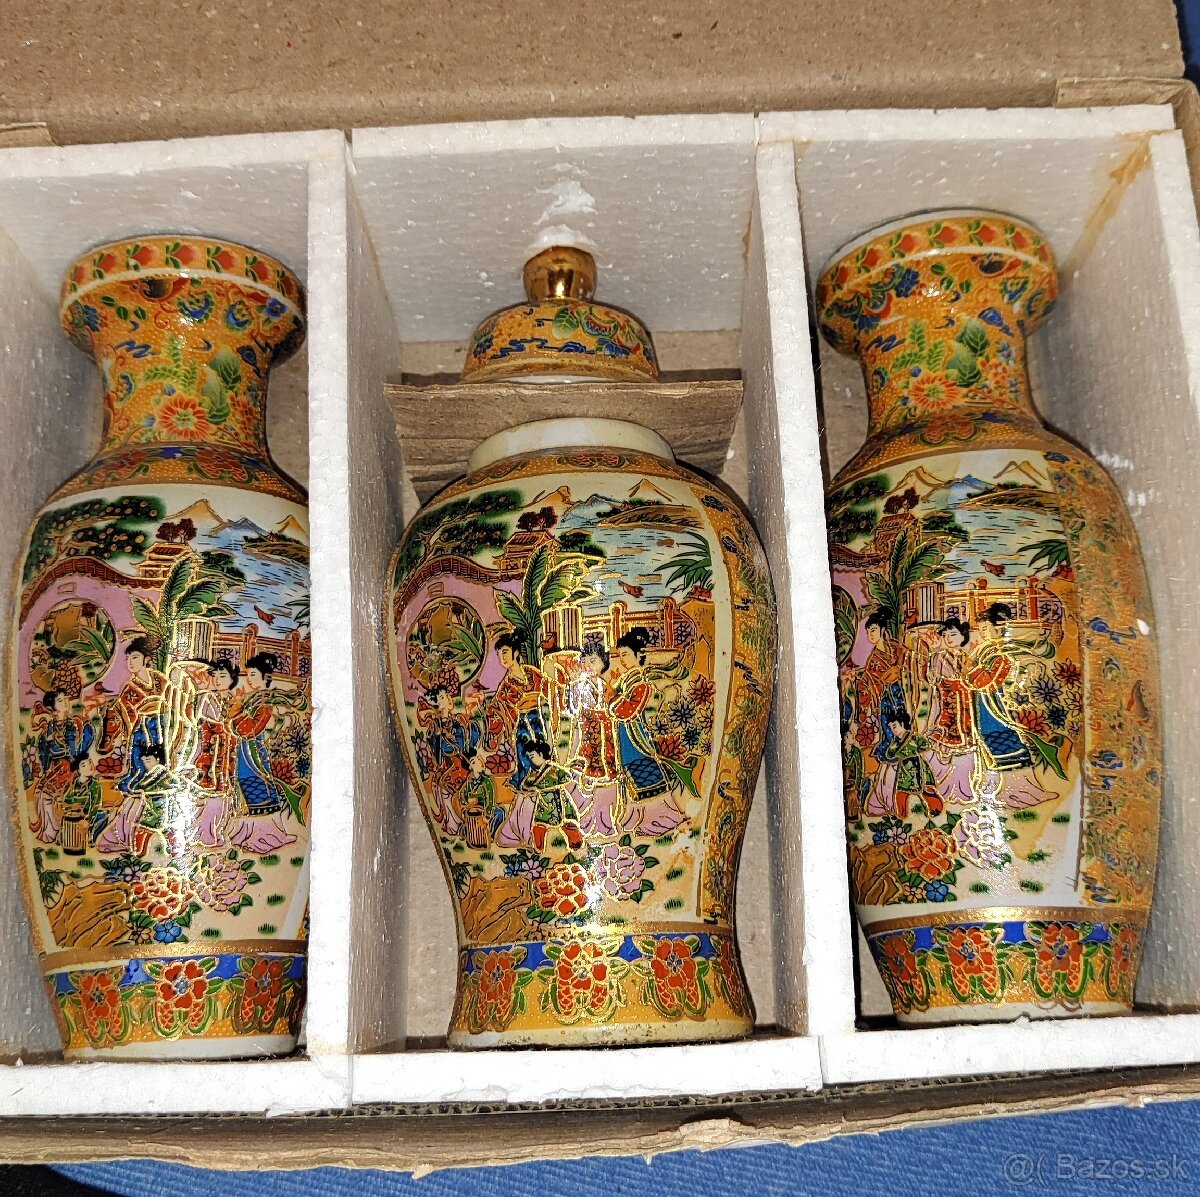 Porcelánové vázy